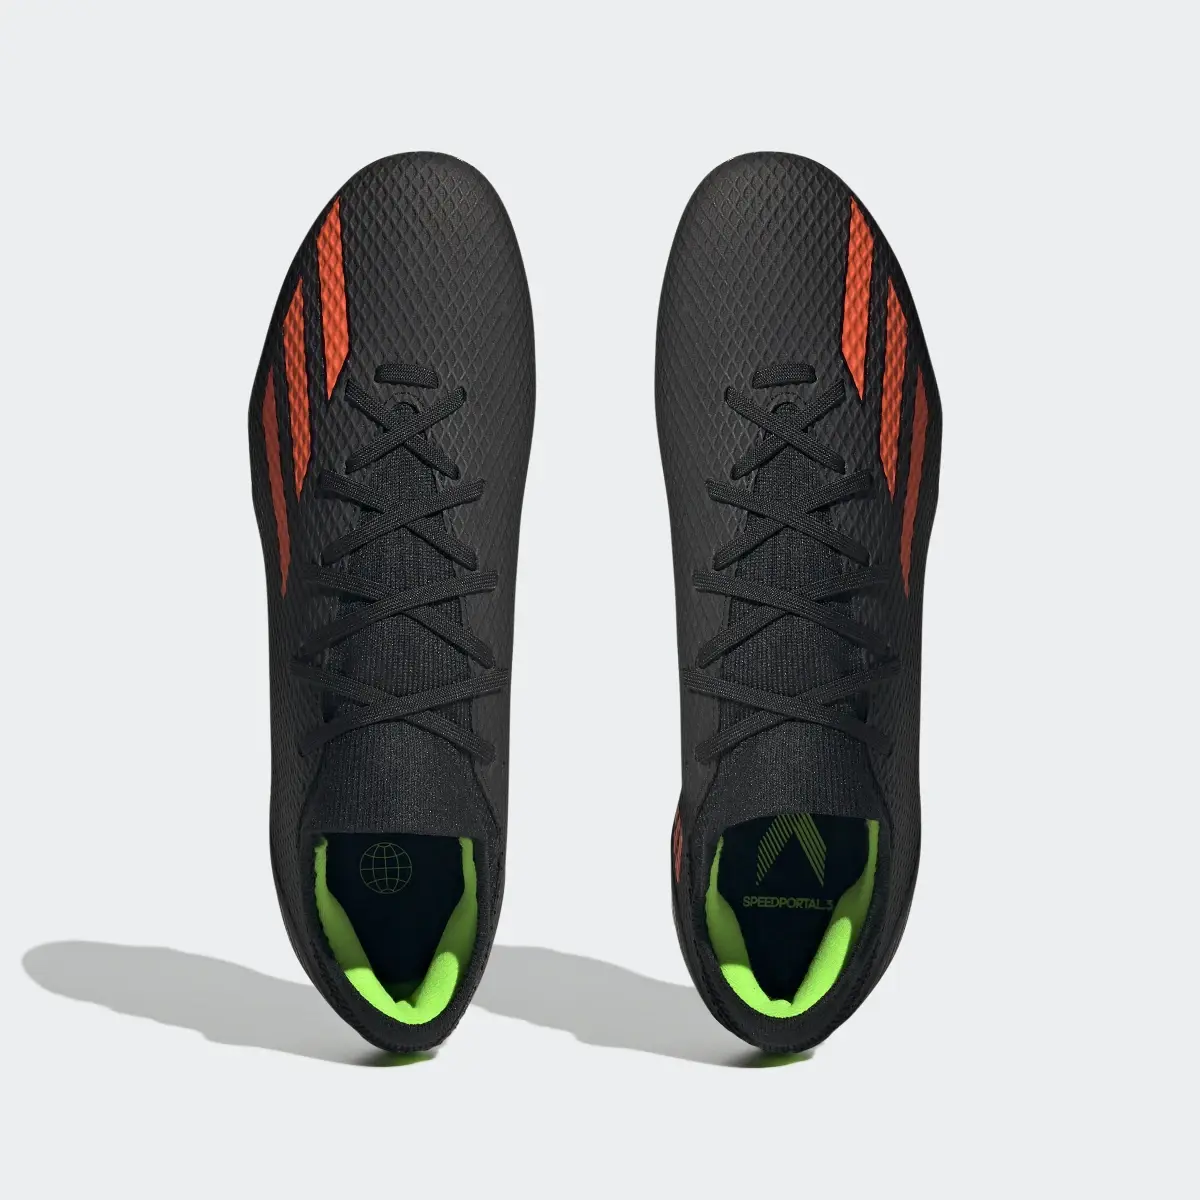 Adidas Scarpe da calcio X Speedportal.3 Firm Ground. 3